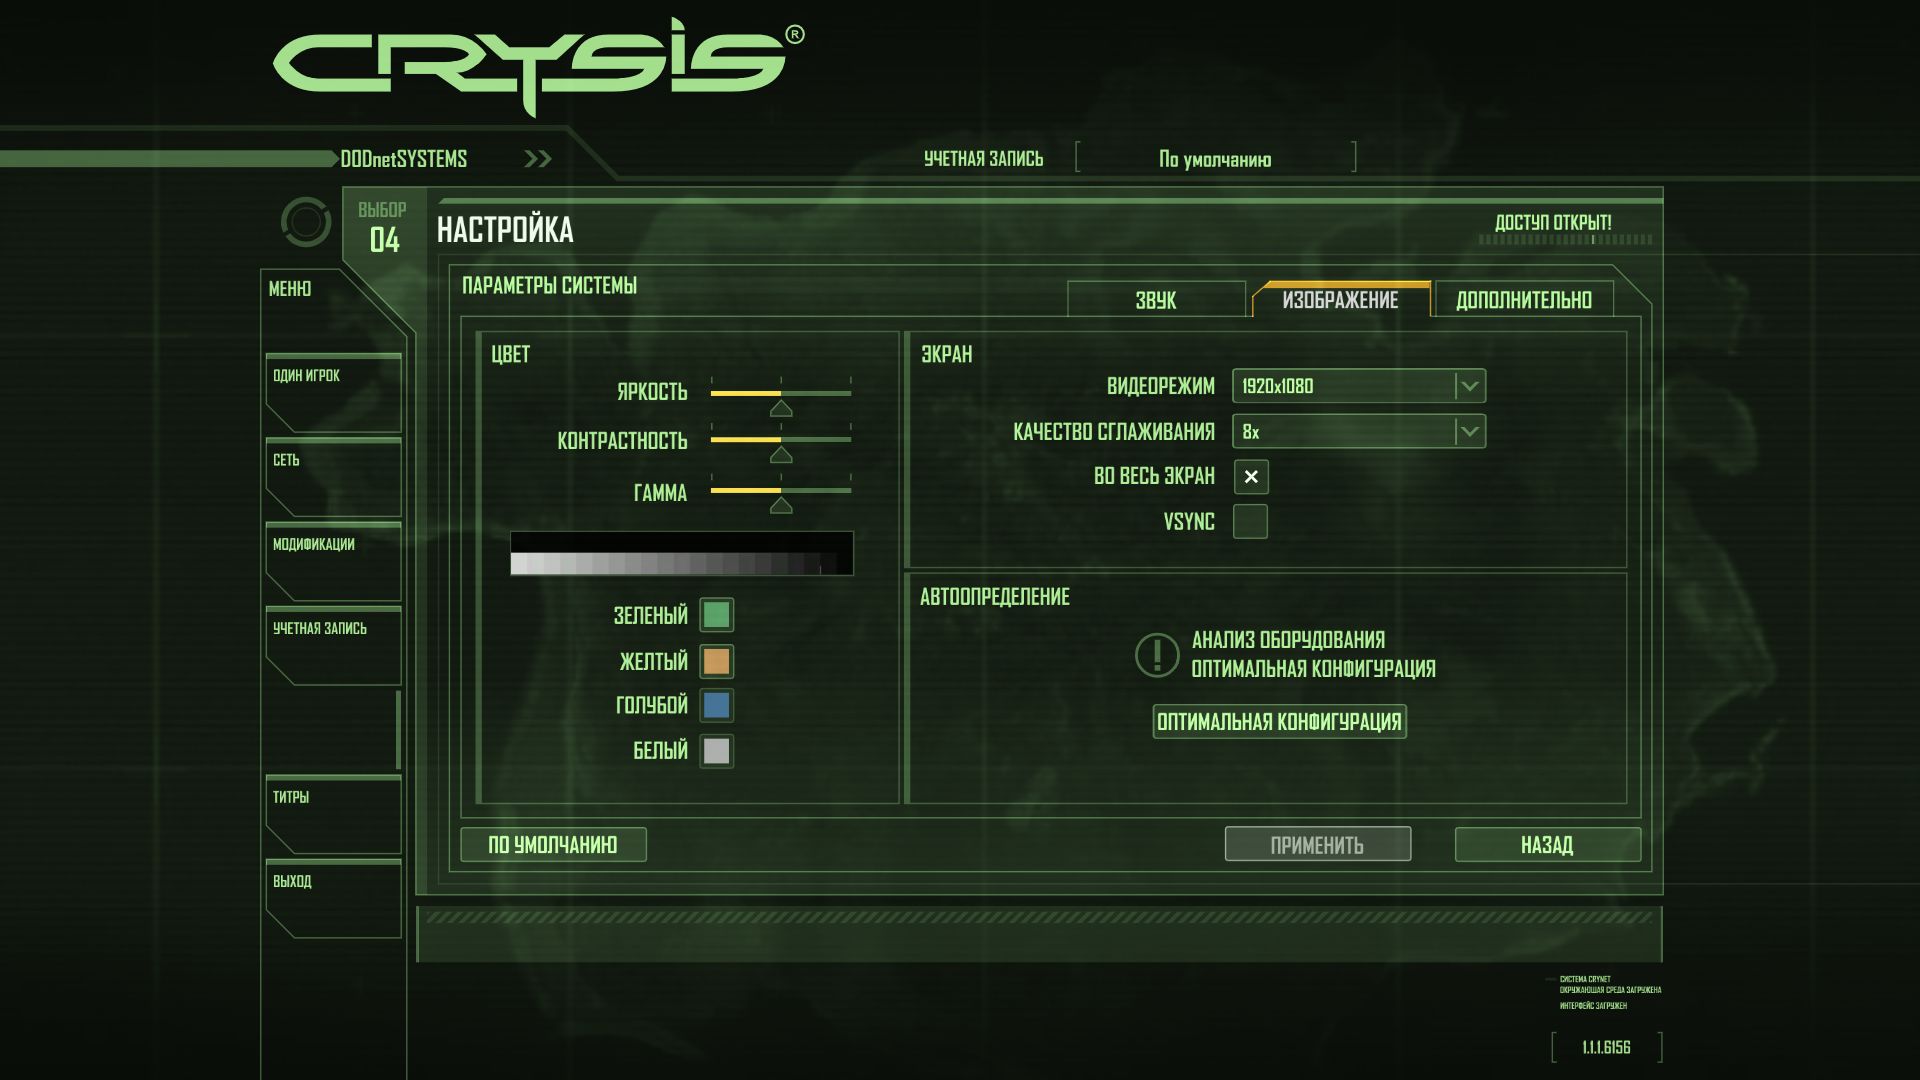 Crysis 2014 09 17 16 55 08 800